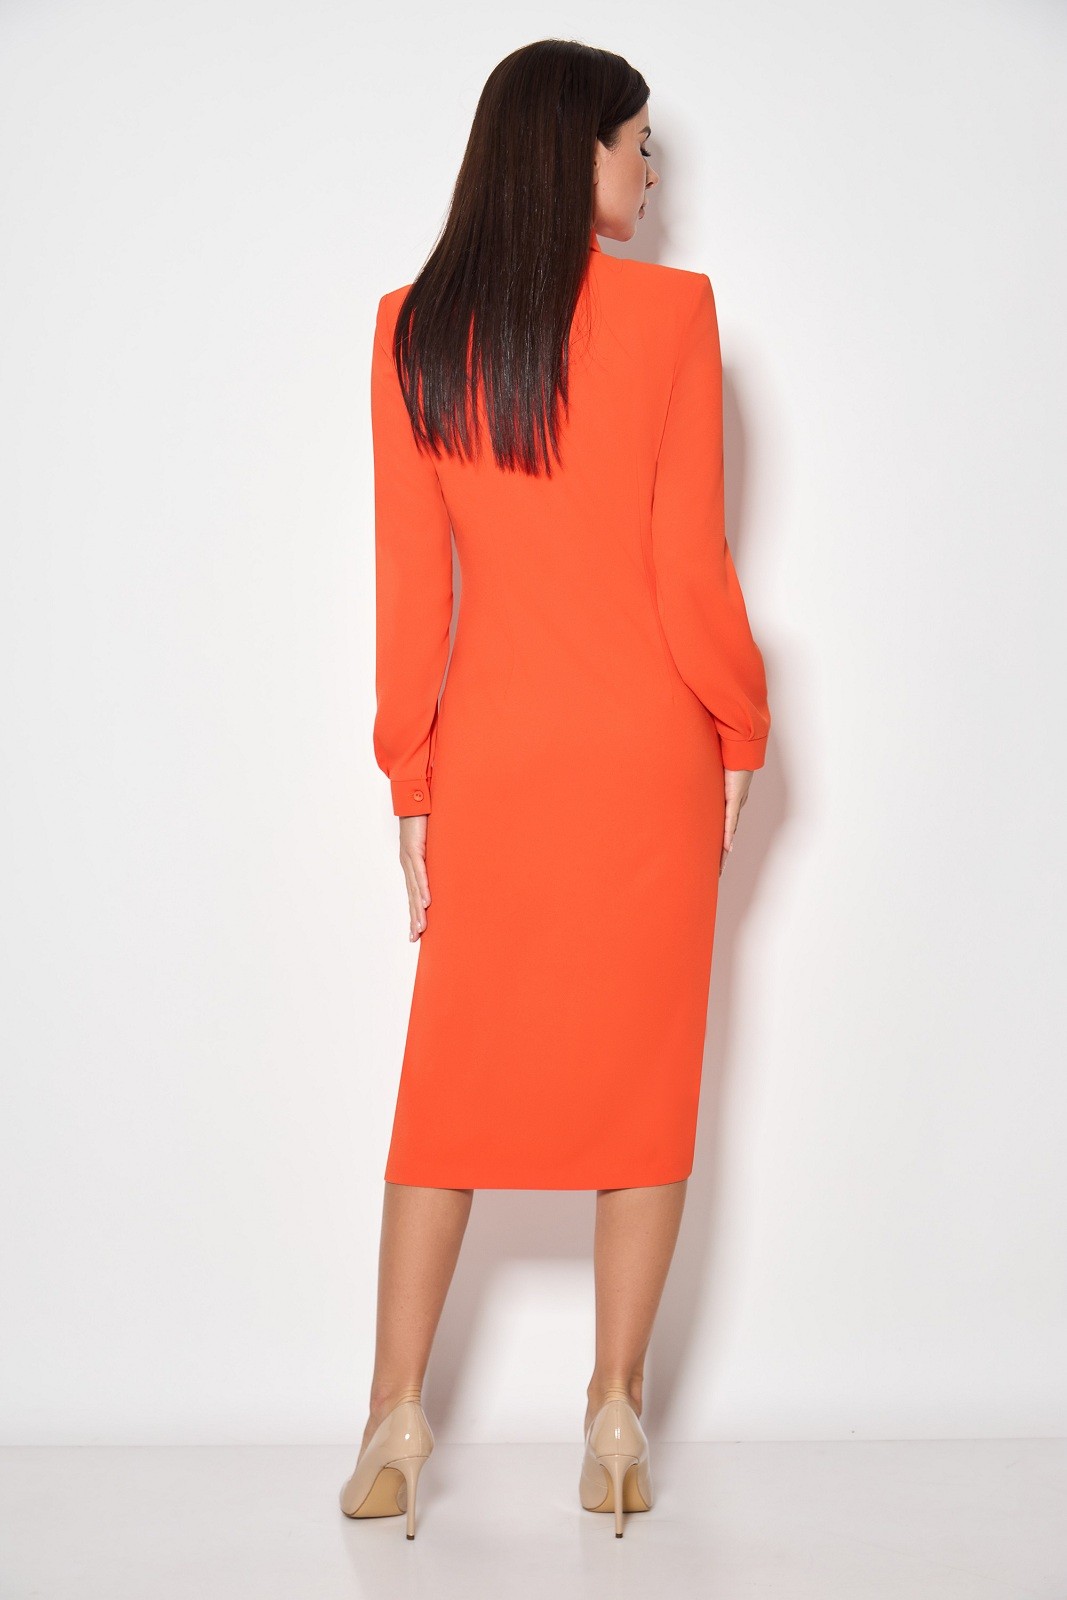 Платье Кокетка и К 891-1 оранжевый